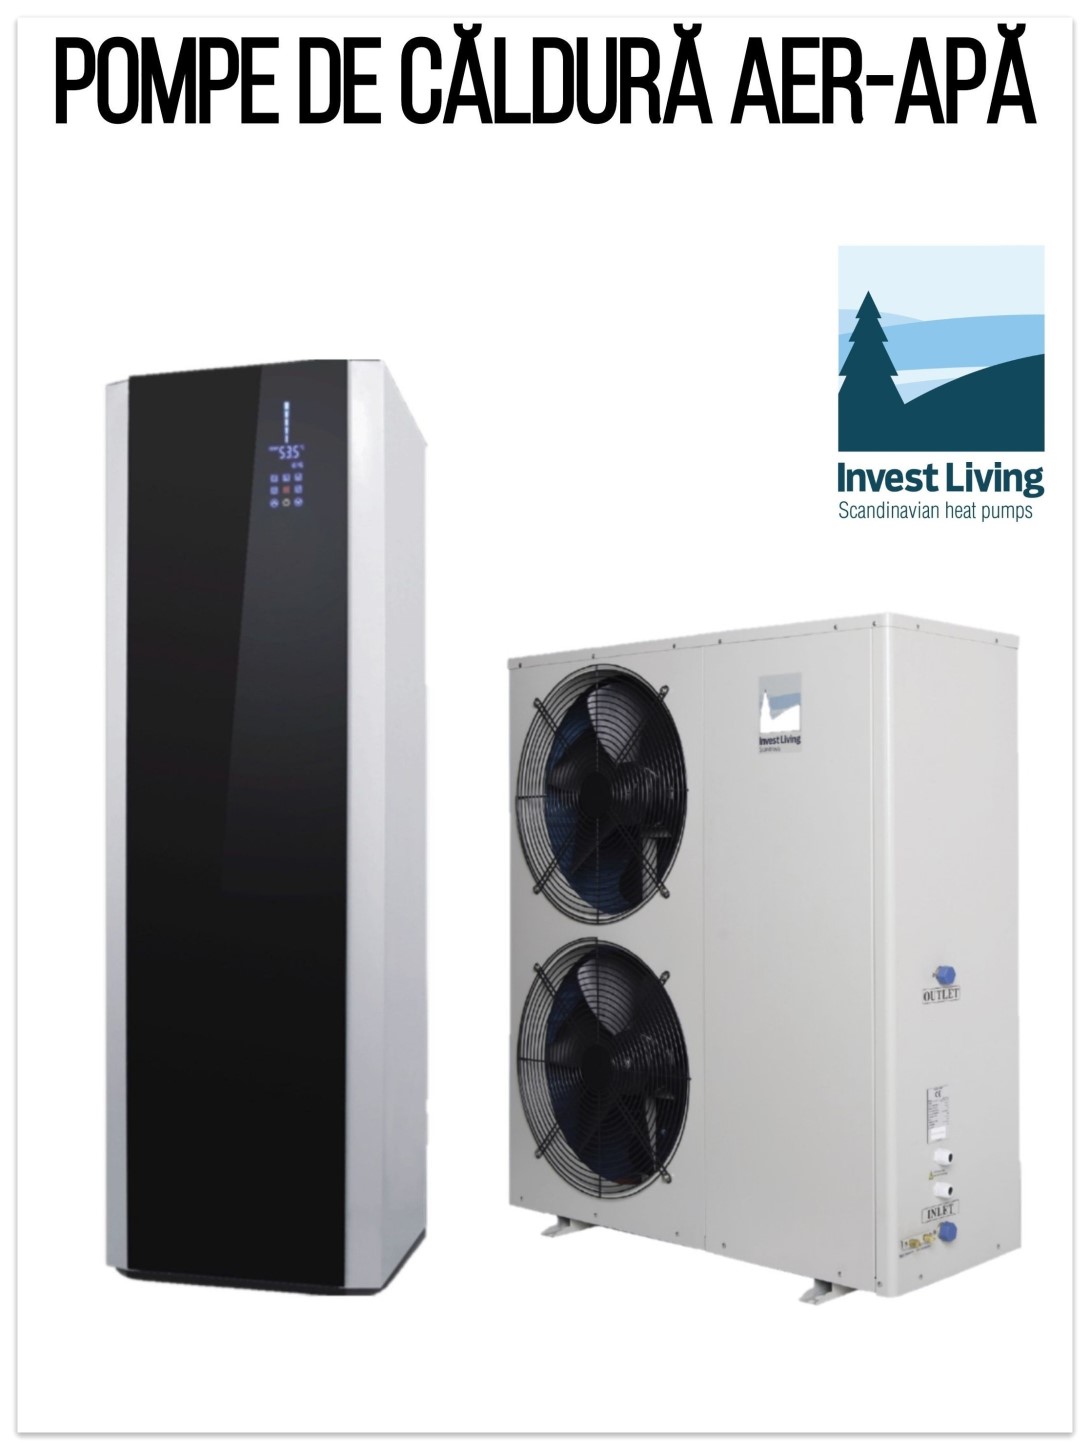 Compresor Hitachi - Pompă de căldură aer apă Invest Living - Pompe de căldură SCANDINAVE - Calitate suedeză - Bonus Air 12 - Self-Energy